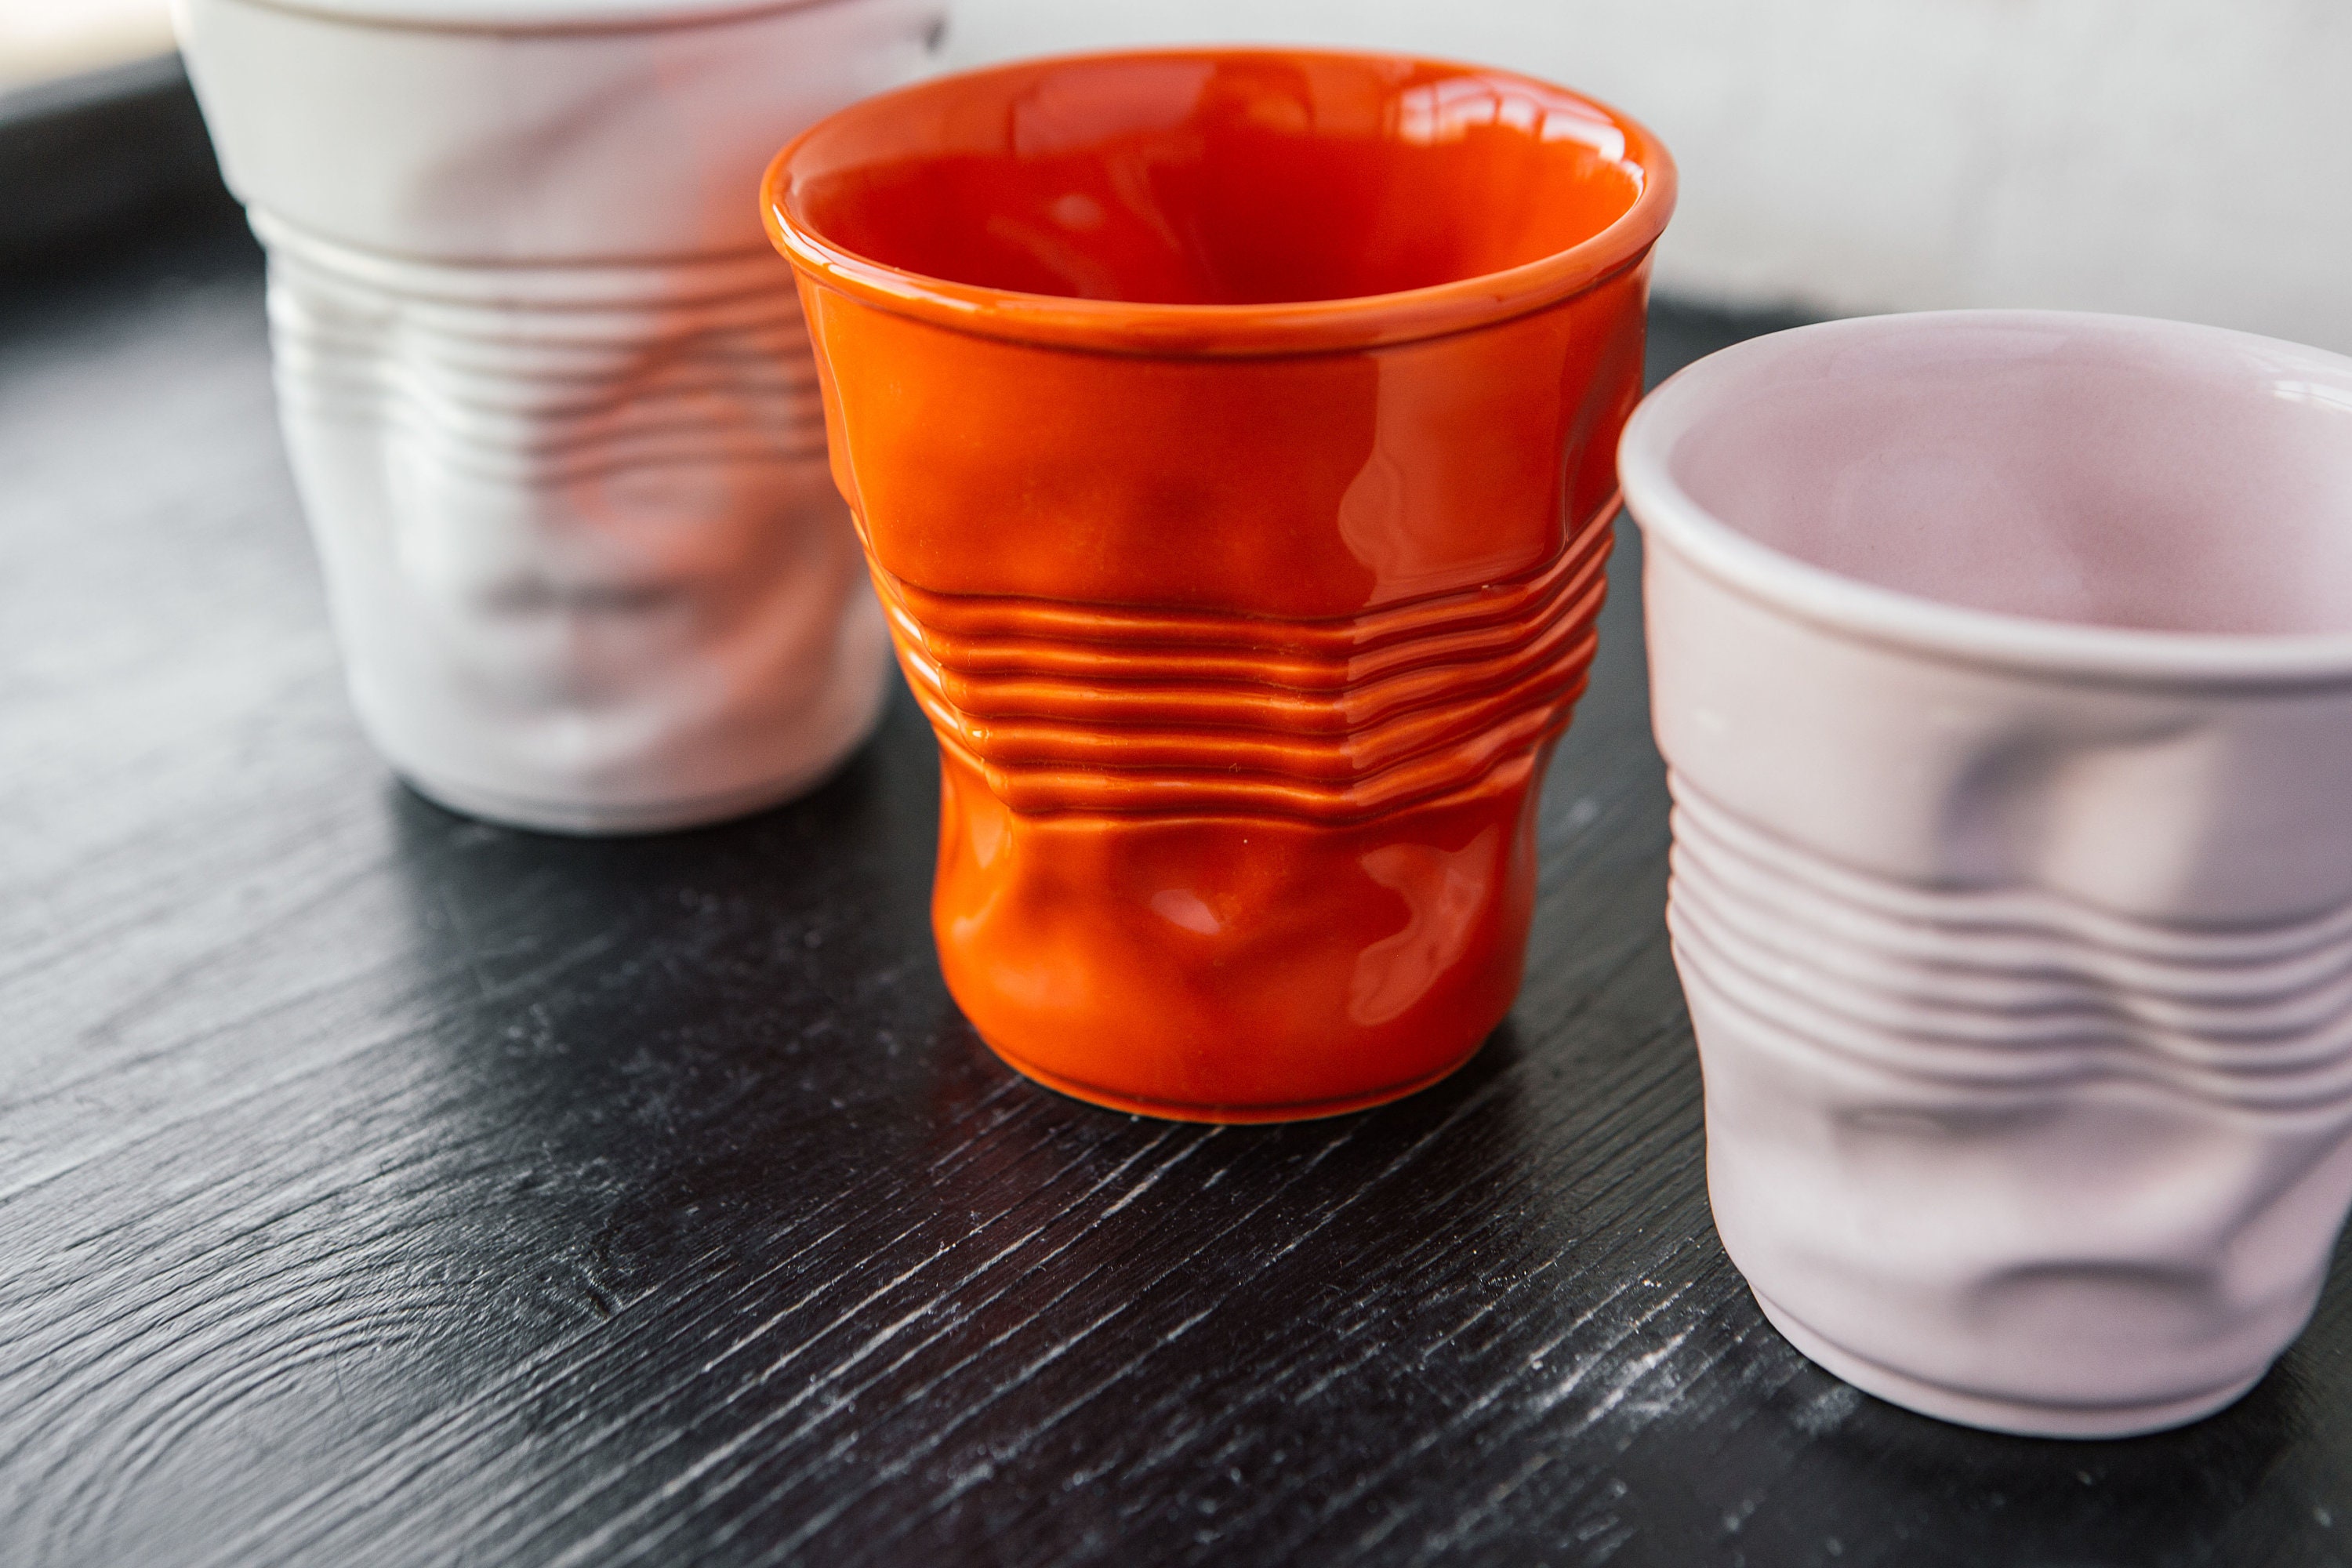 Crinkled Ceramic Cup, Color White, Plastic Cup, Ceramic Tumbler